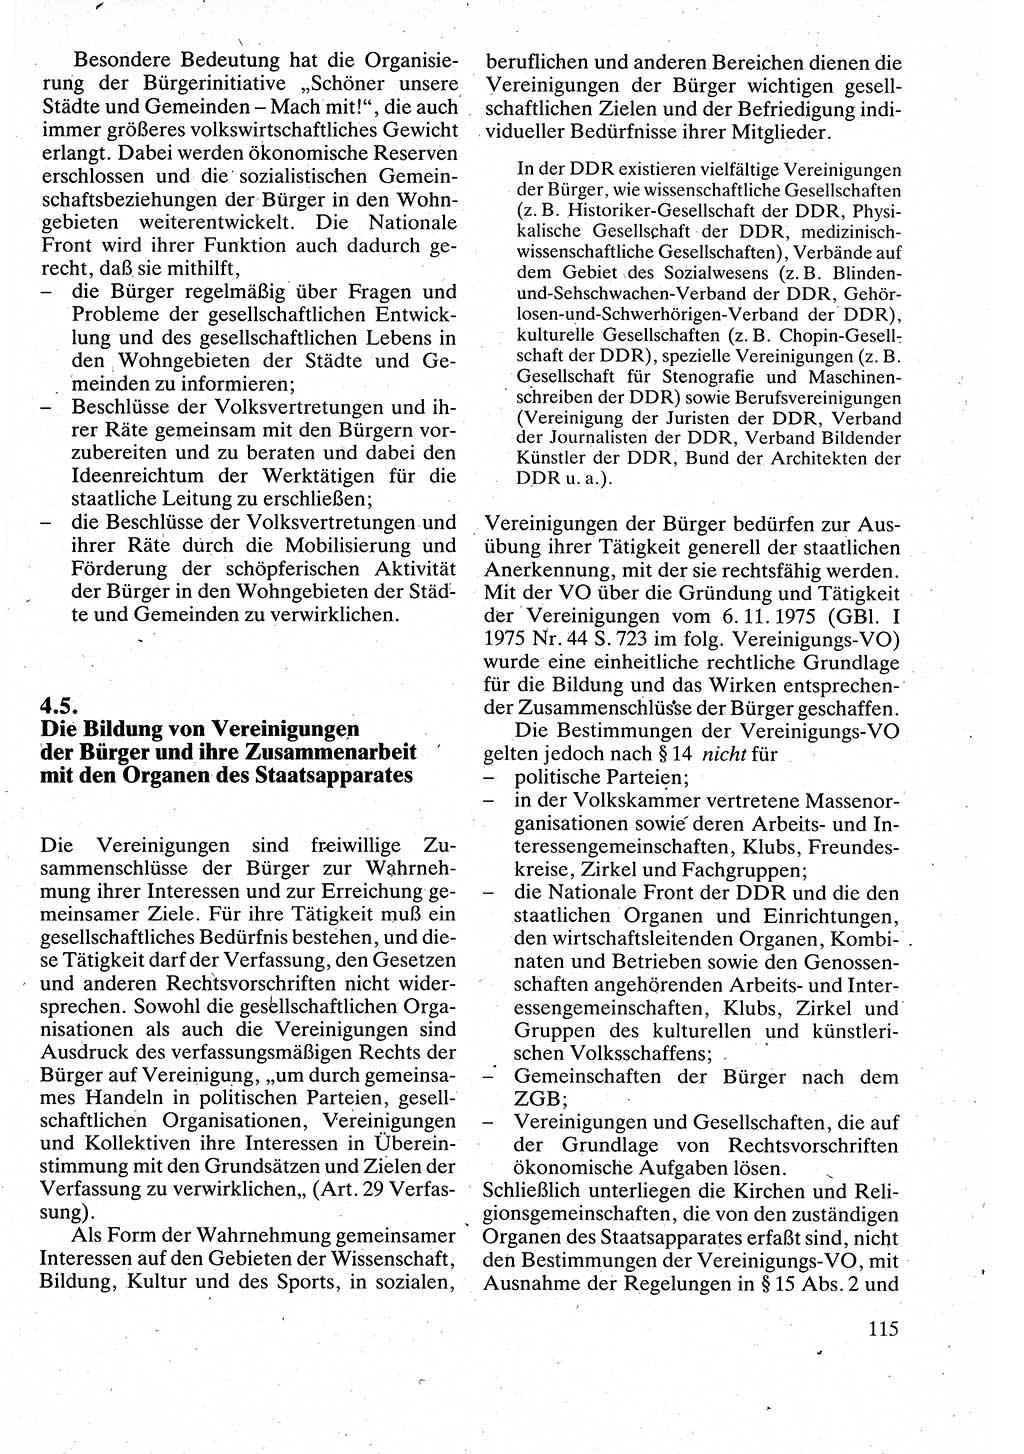 Verwaltungsrecht [Deutsche Demokratische Republik (DDR)], Lehrbuch 1988, Seite 115 (Verw.-R. DDR Lb. 1988, S. 115)